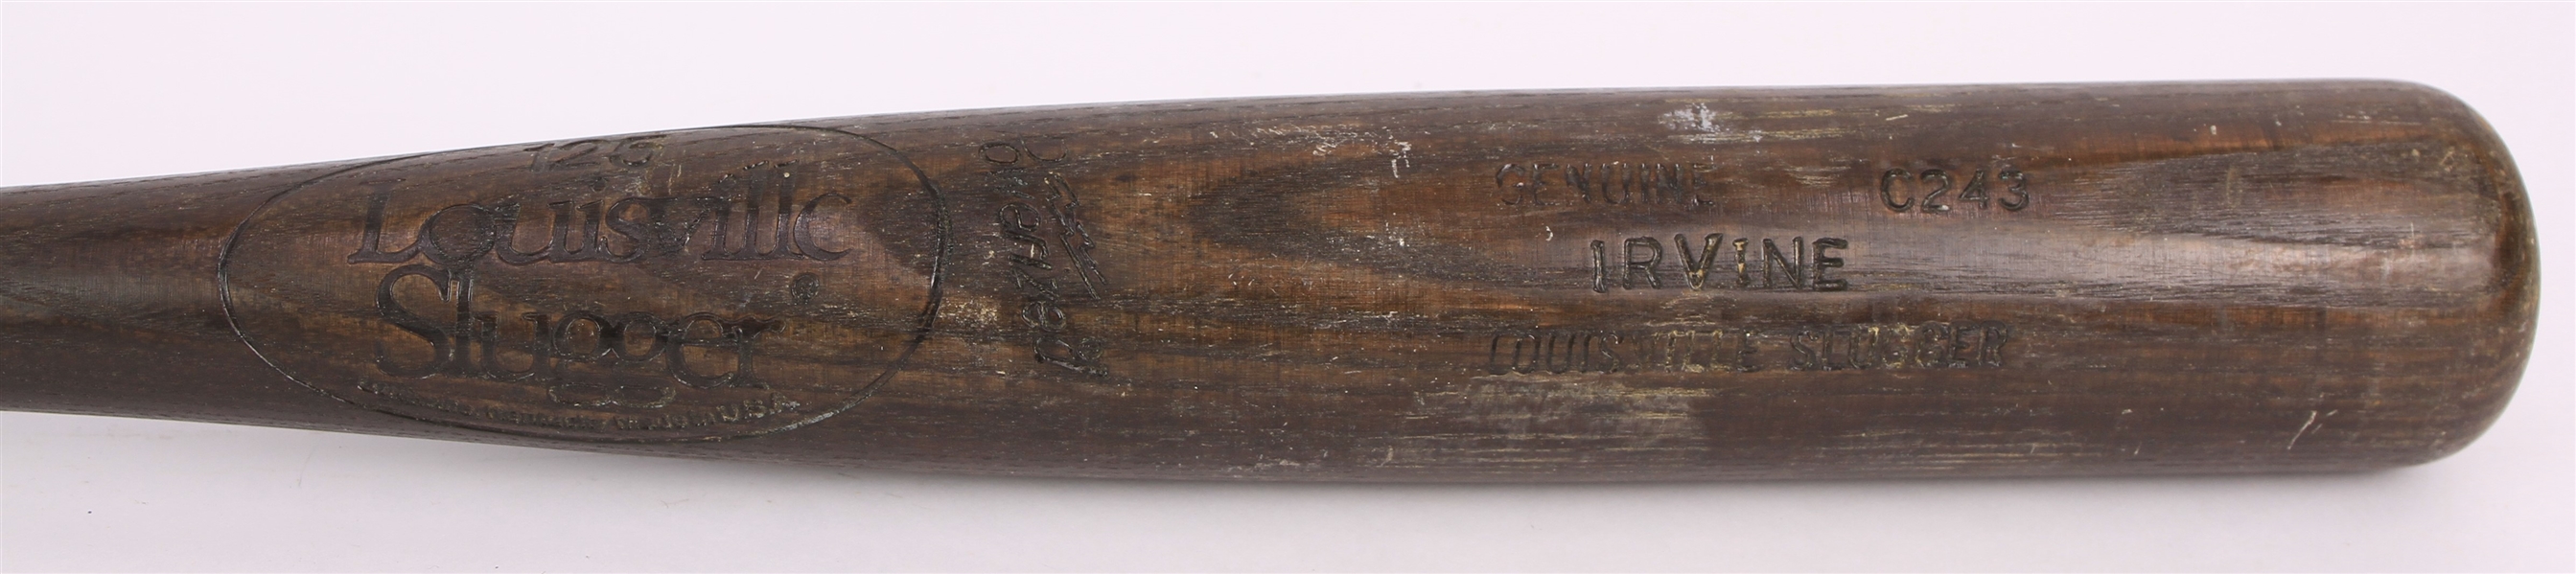 1980-82 Ed Irvine Minor League Louisville Slugger Professional Model Game Used Bat (MEARS LOA)